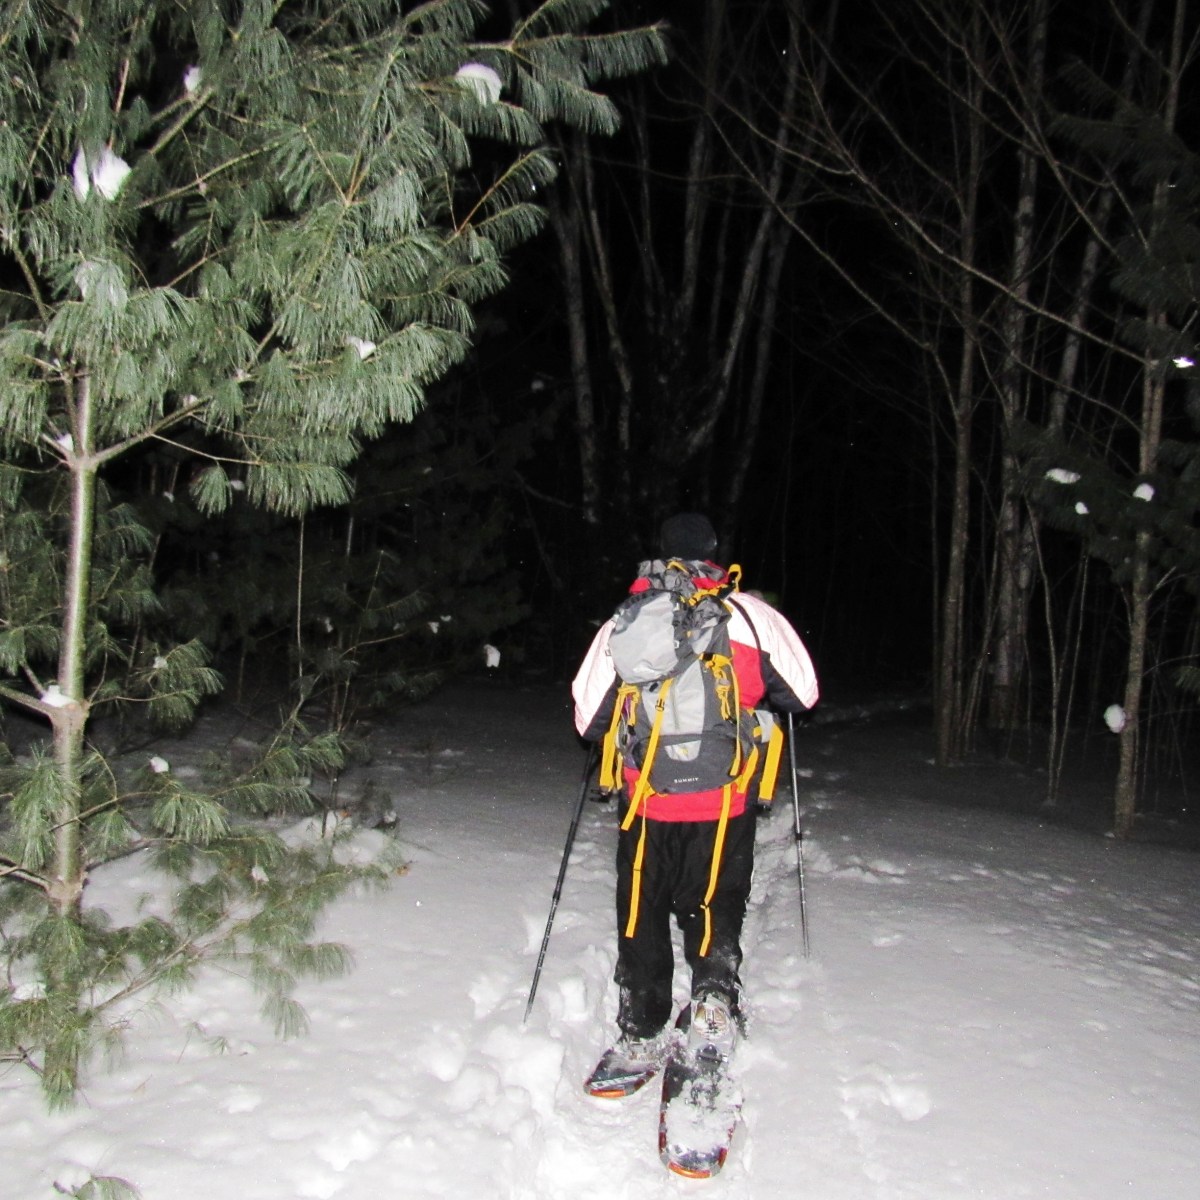 Snowshoe hiker in the dark in winter